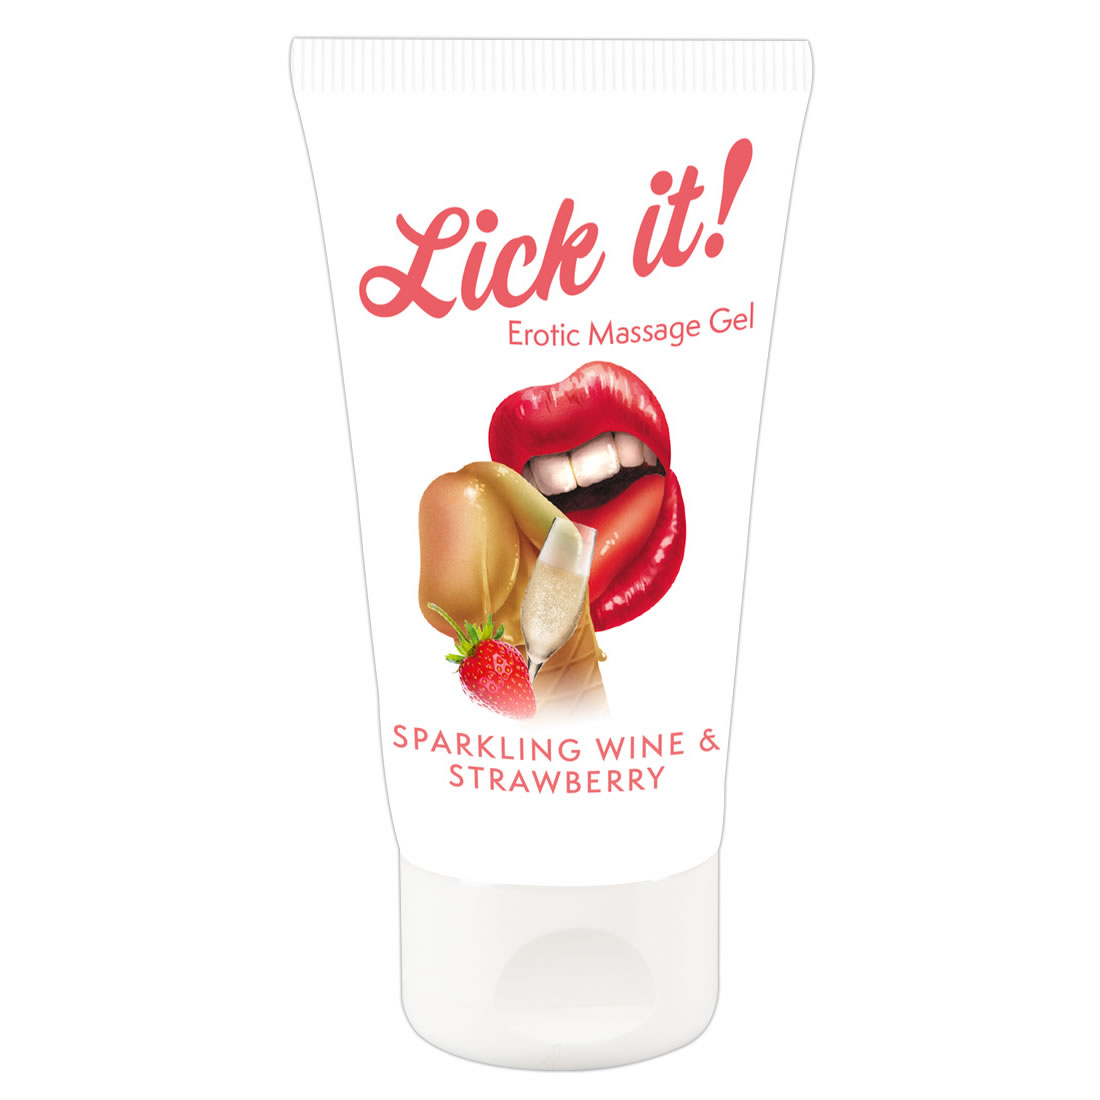 Lick-it Jordbær og Champagne Massage Olie